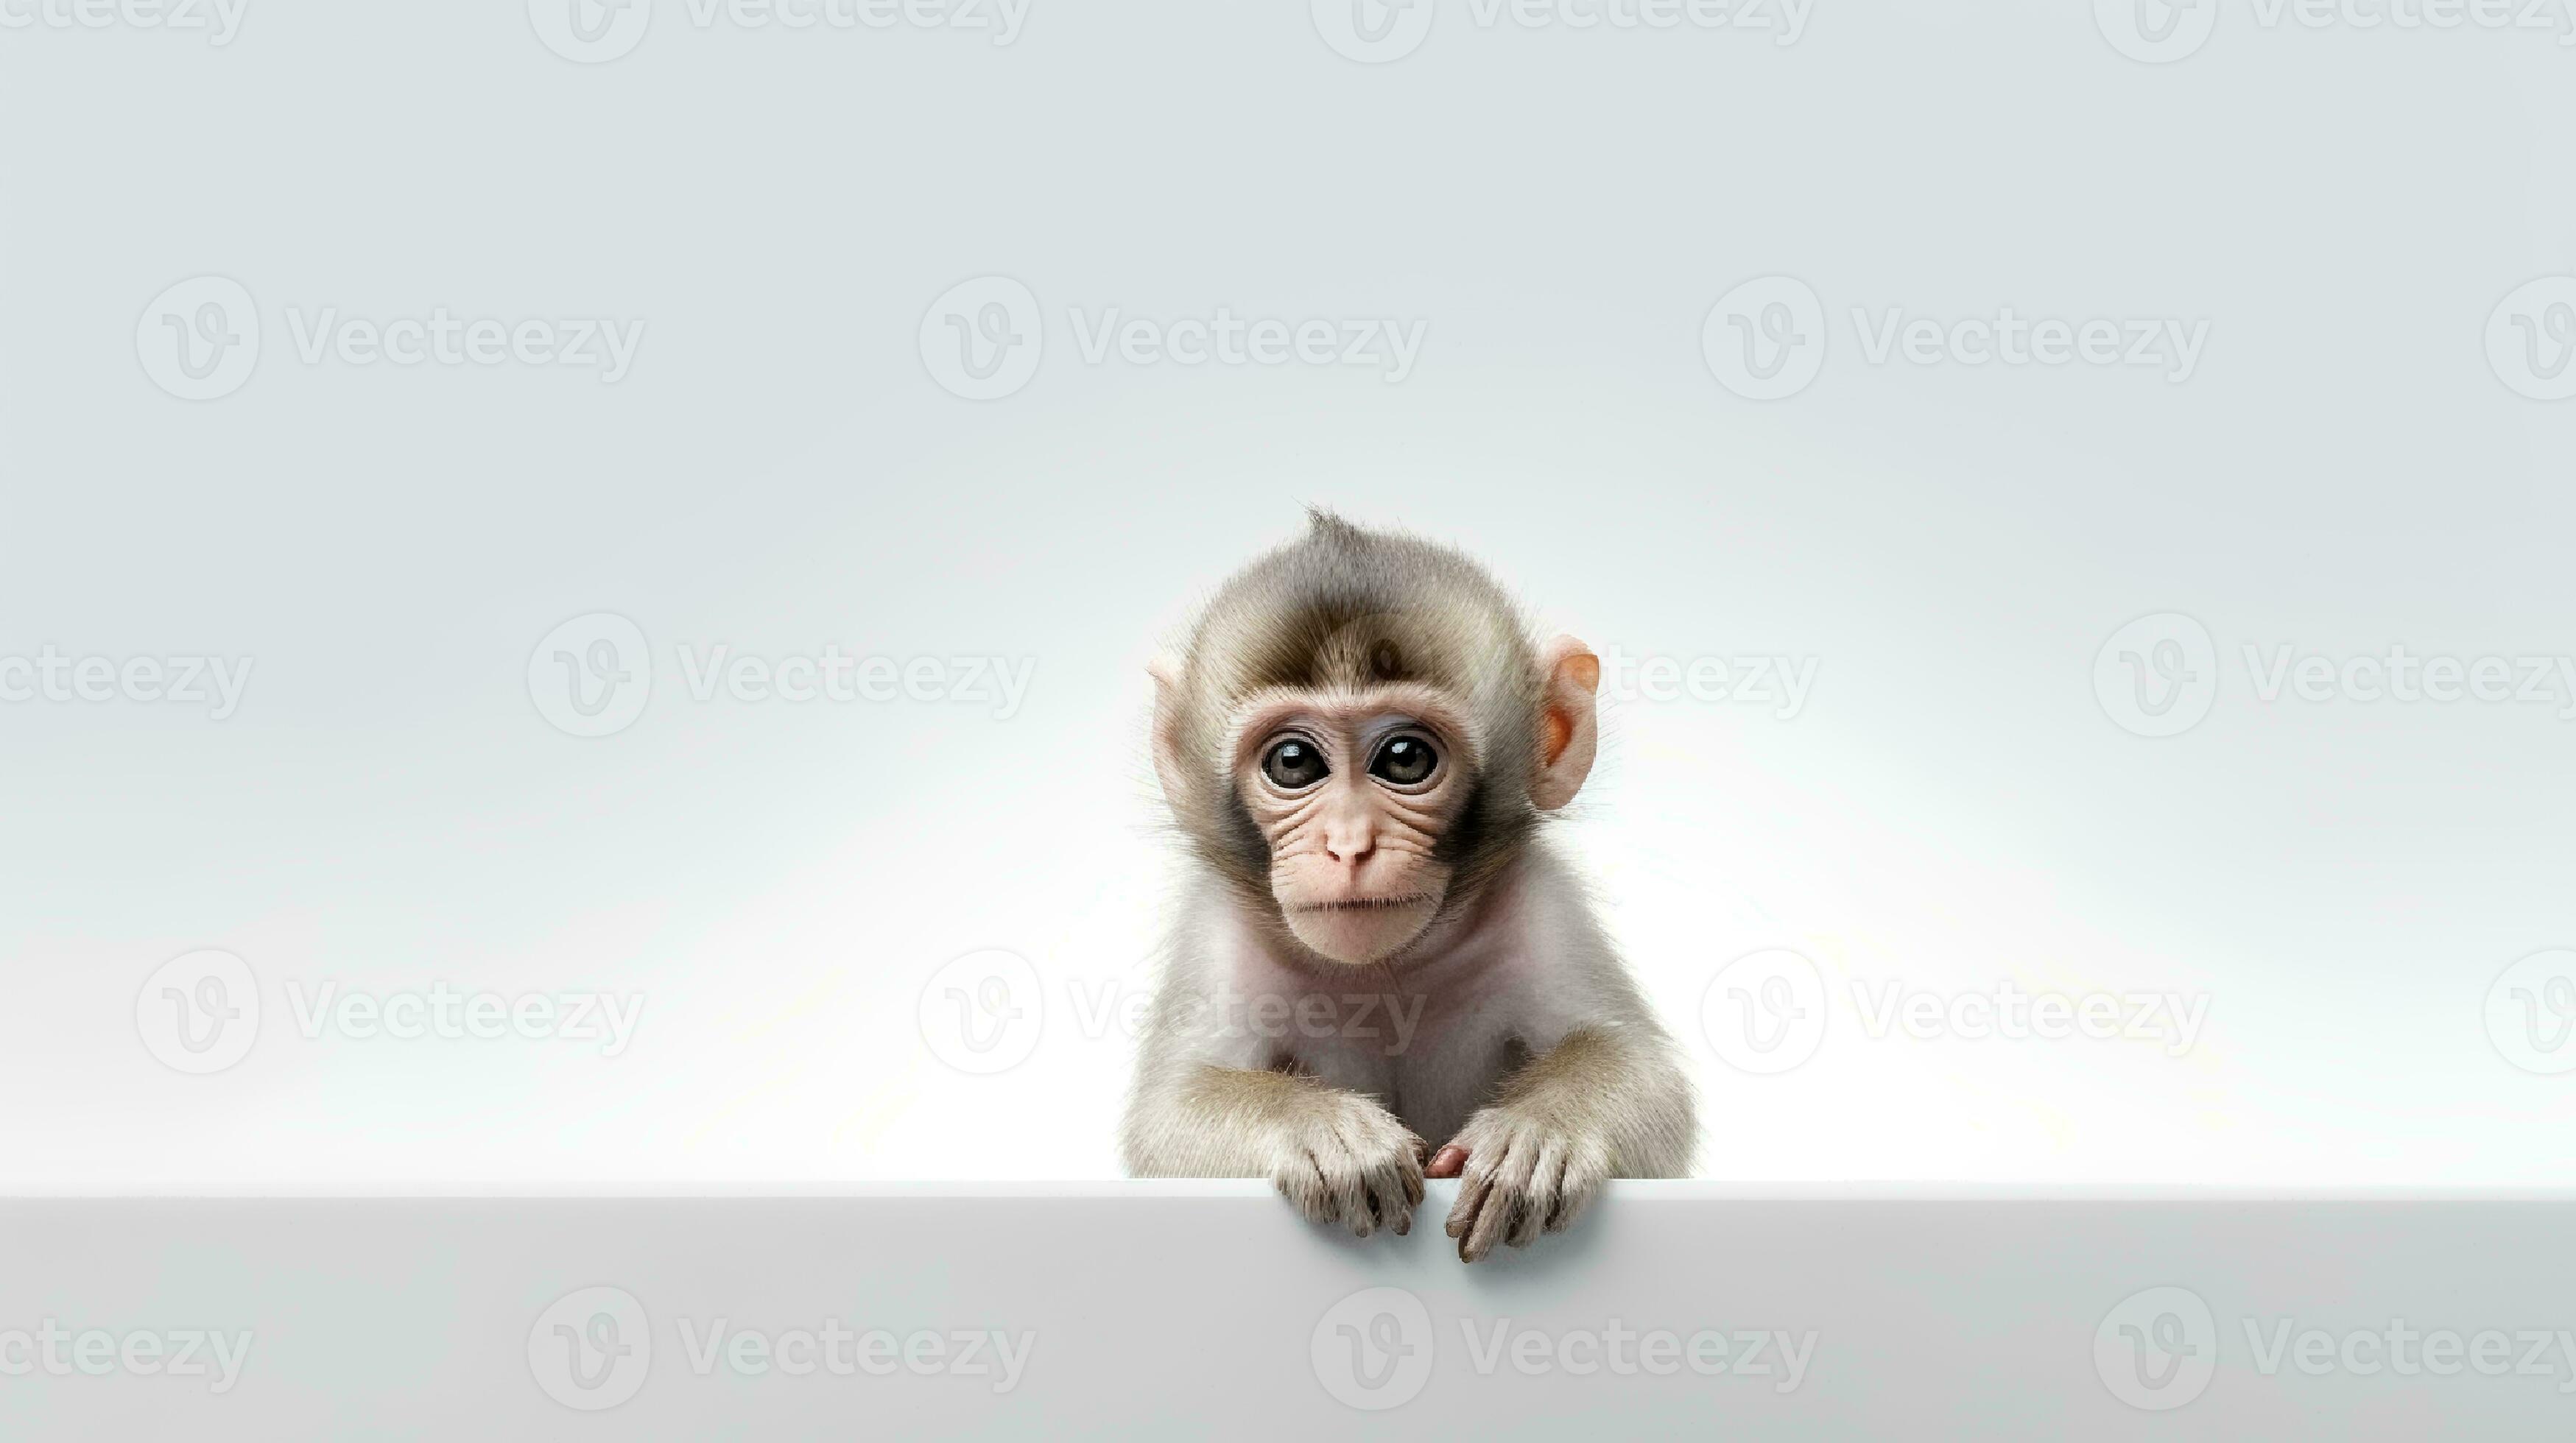 460 Foto Do Macaco Branco Fotos, Imagens e Fundo para Download